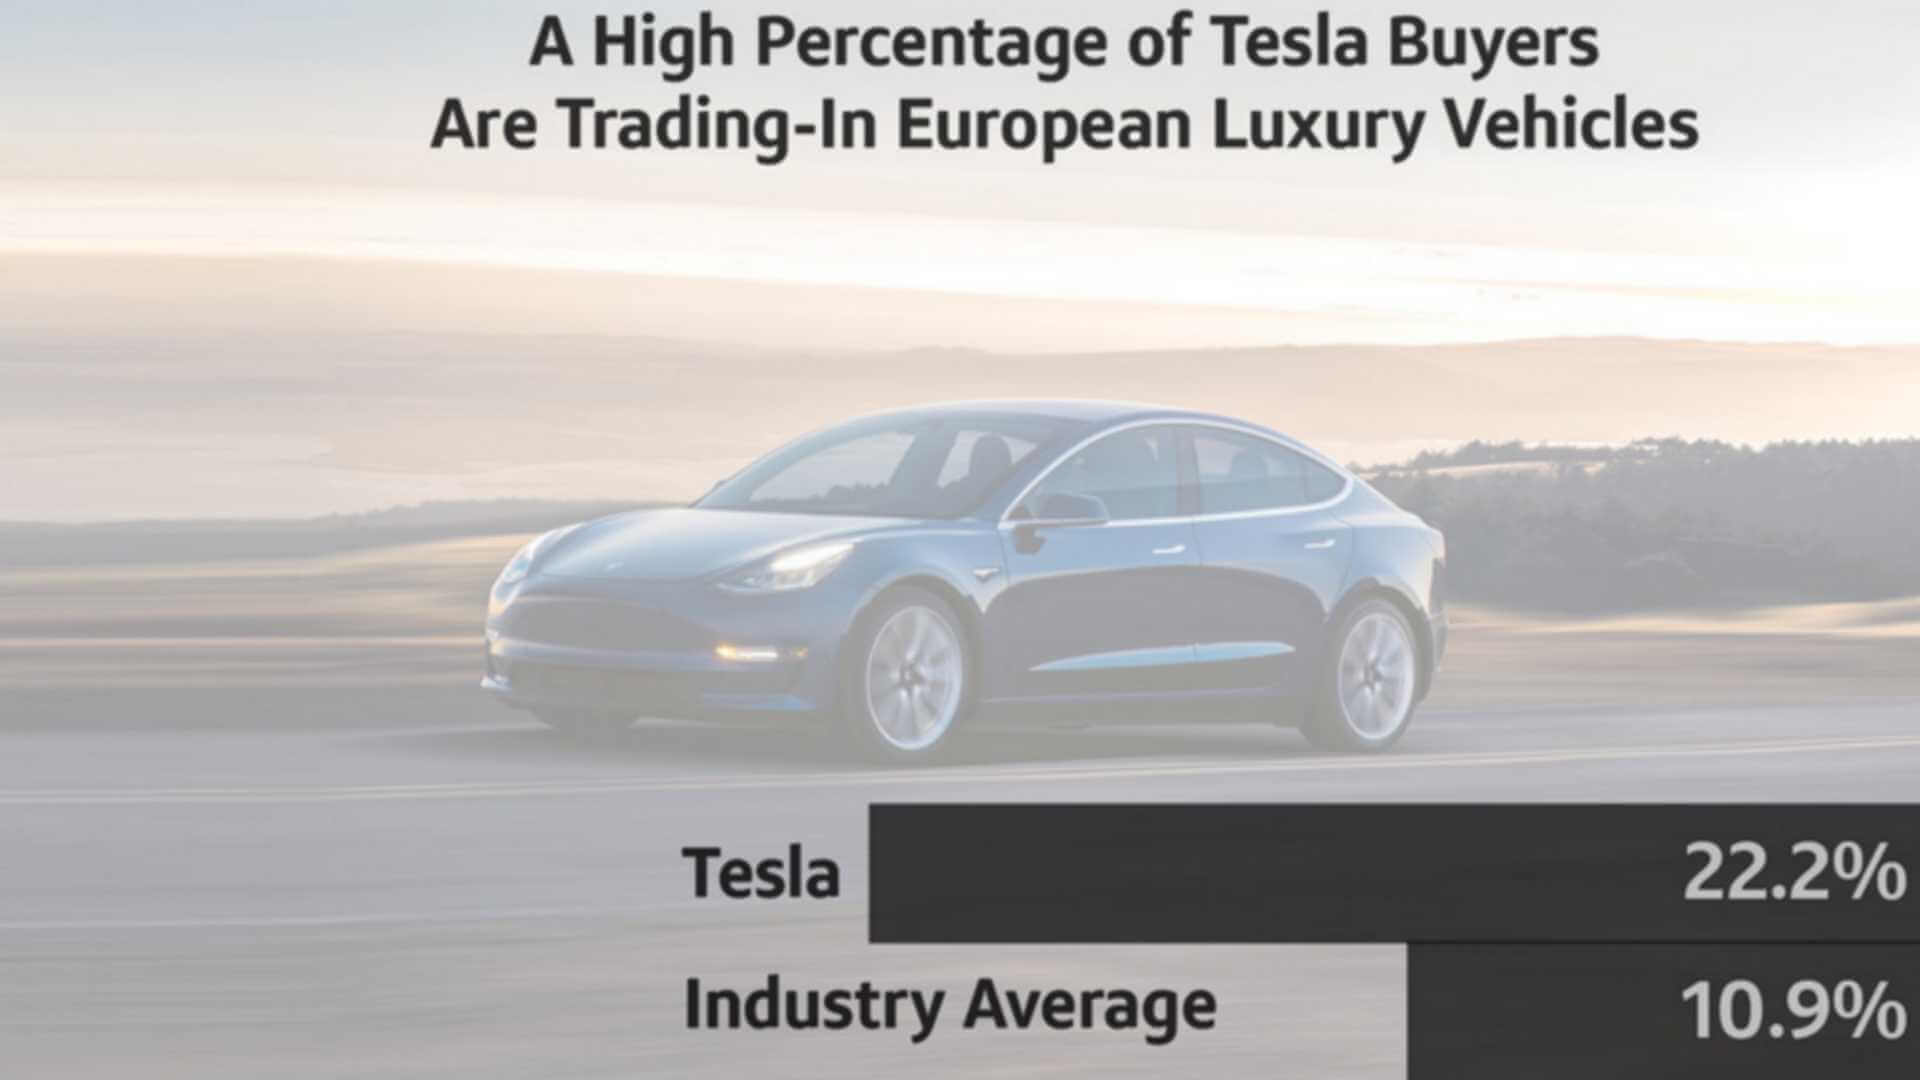 Владельцы европейских люксовых автомобилей в 22,2% случаев переходят на электромобили Tesla